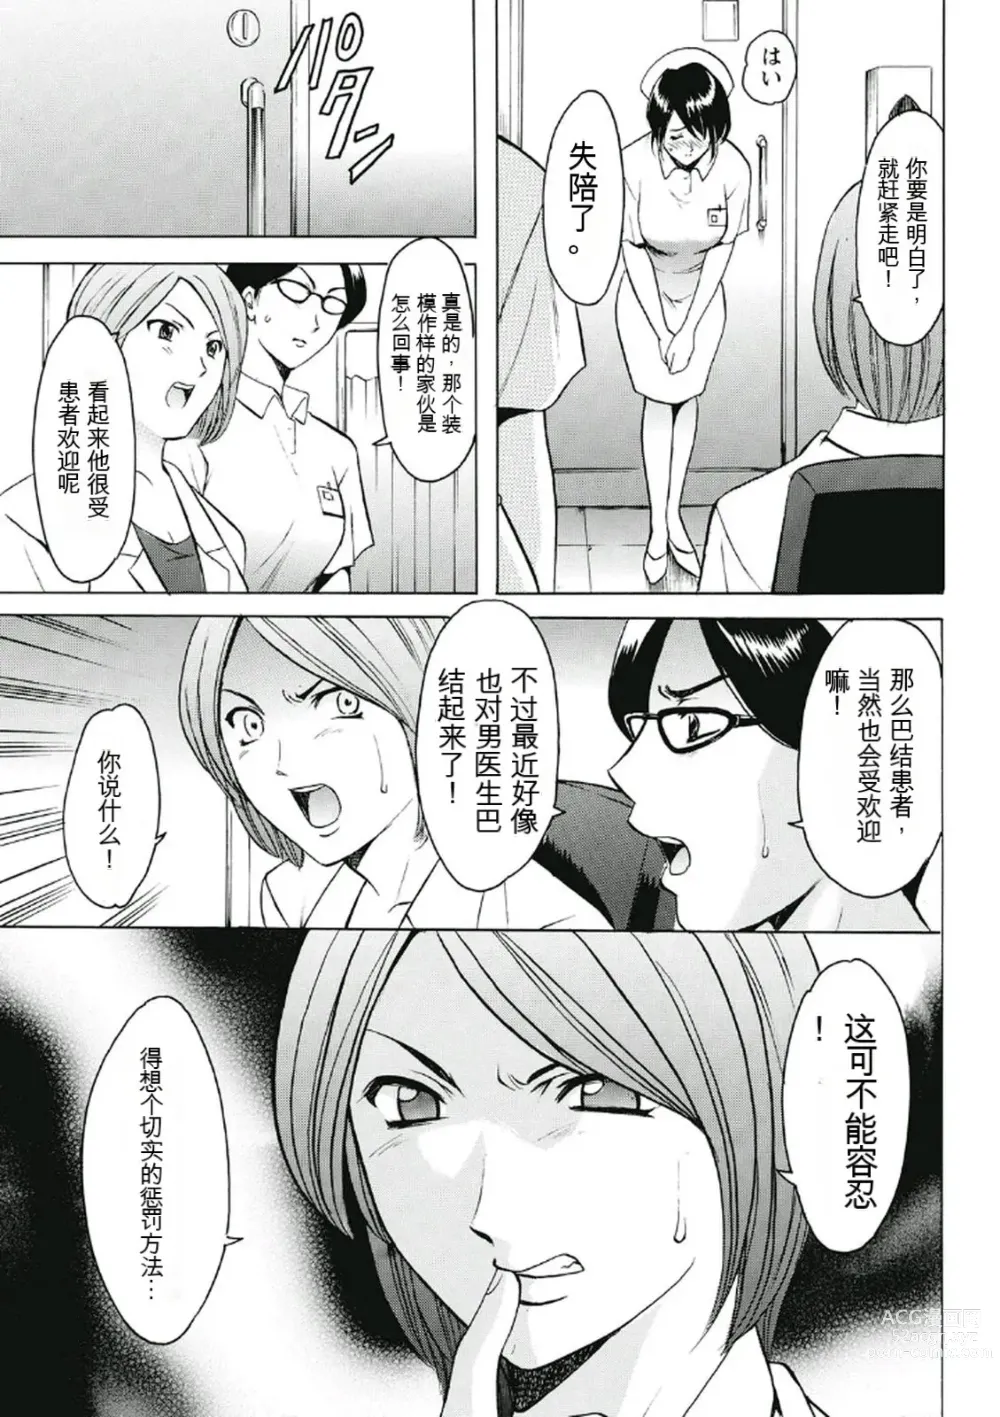 Page 7 of manga Chijoku Byoutou -Hakui no Datenshi-